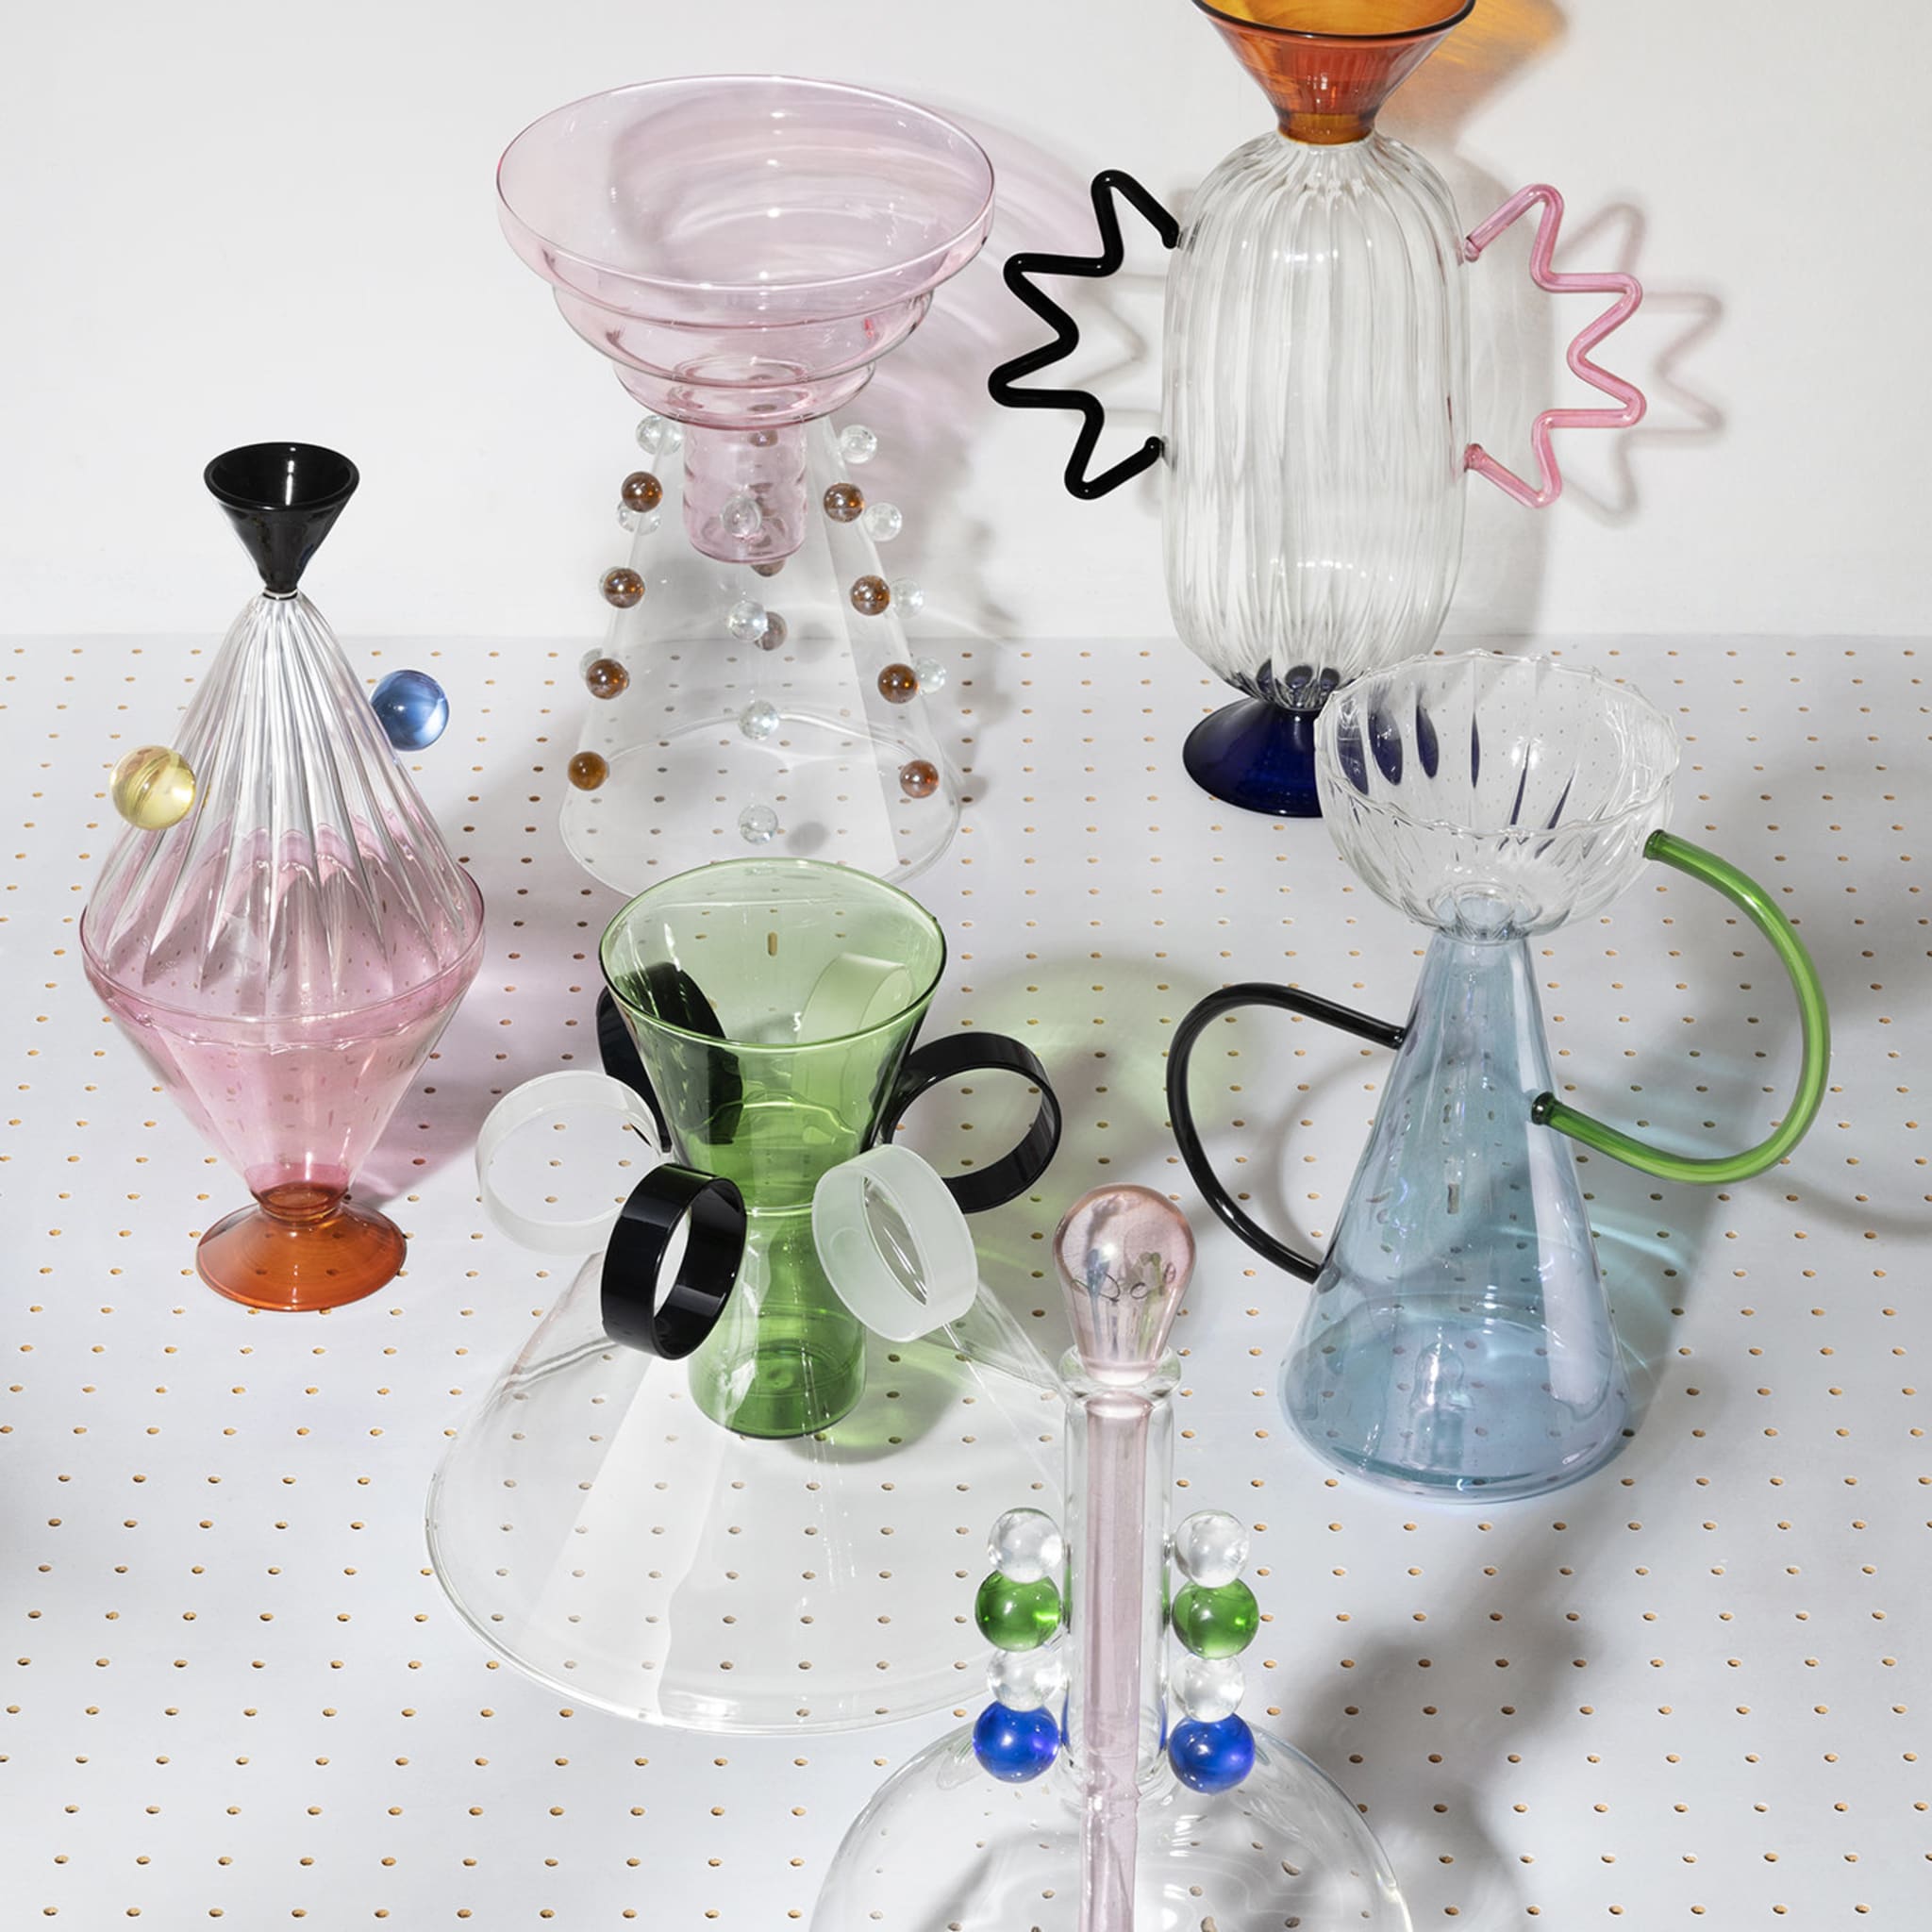 Arabesque 02 Hand-Blown Glass Vase - Alternative view 2